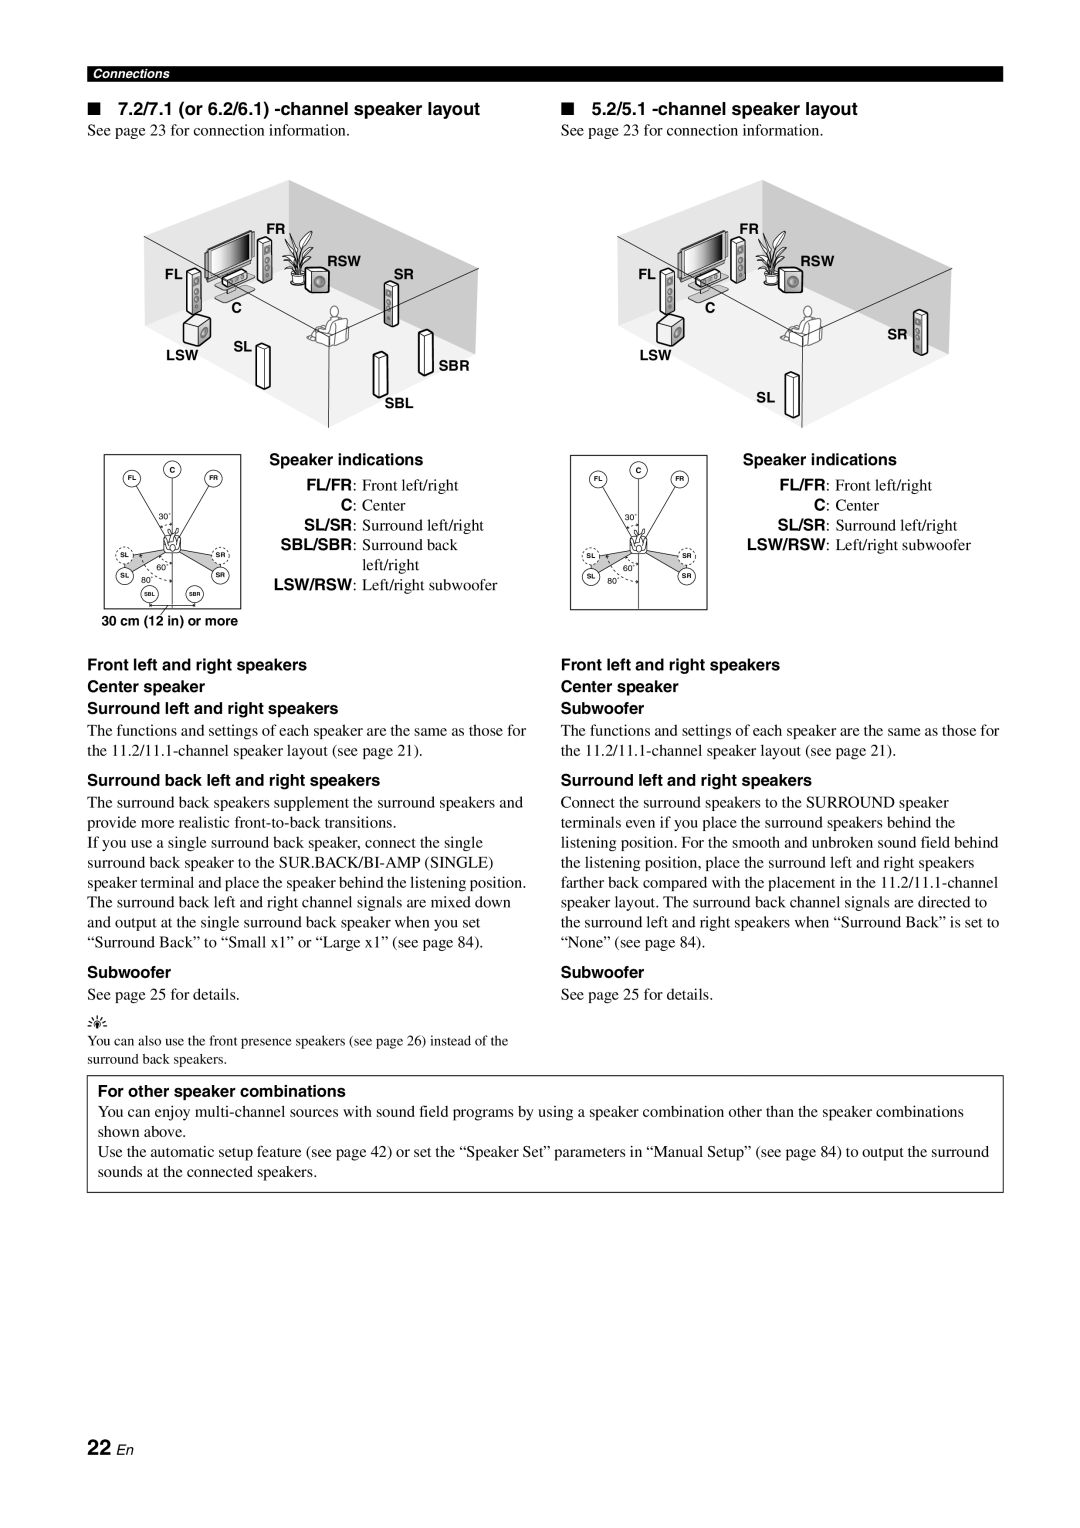 Yamaha DSP-Z11 owner manual 22 En, 7.2/7.1 or 6.2/6.1 -channelspeaker layout, 5.2/5.1 -channelspeaker layout 